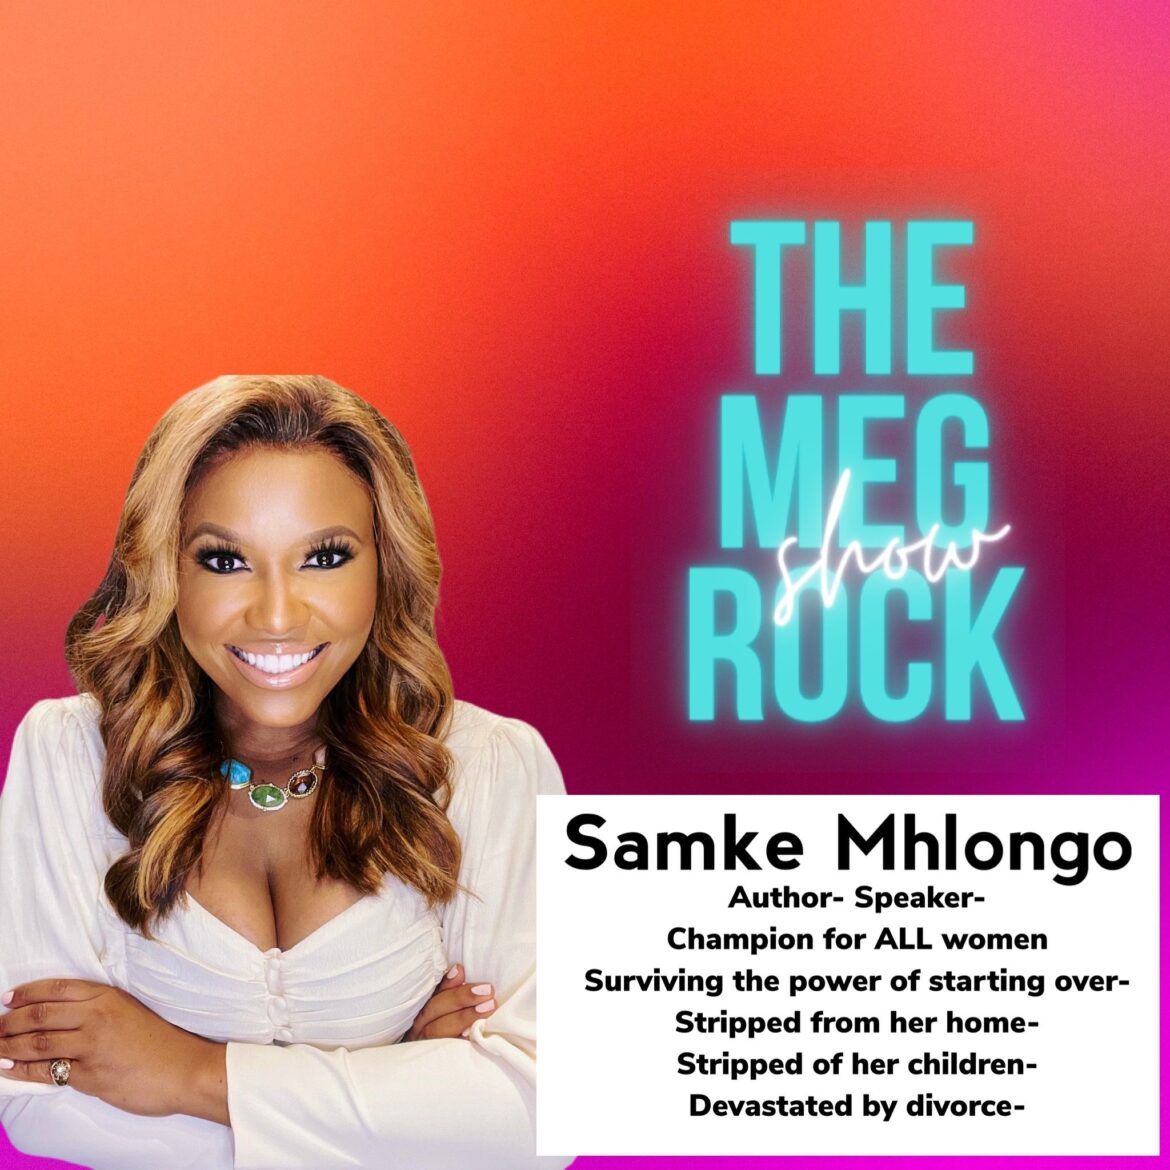 Samke Mhlongo